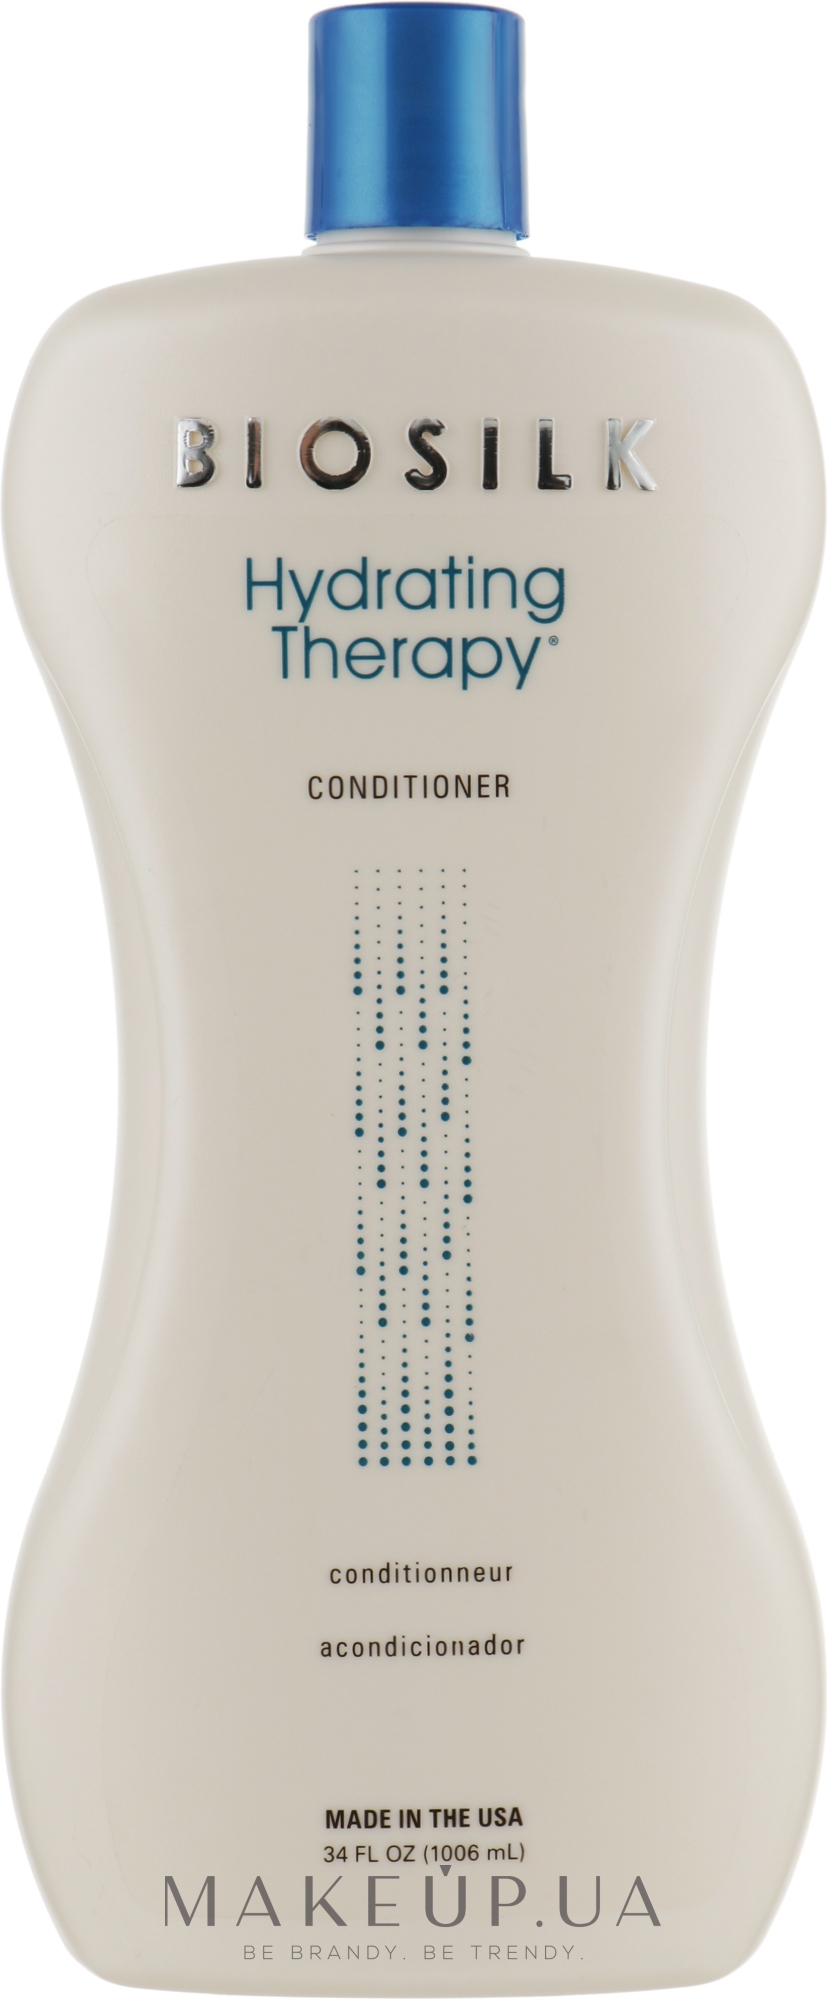 Кондиционер для глубокого увлажнения волос - BioSilk Hydrating Therapy Conditioner — фото 1006ml